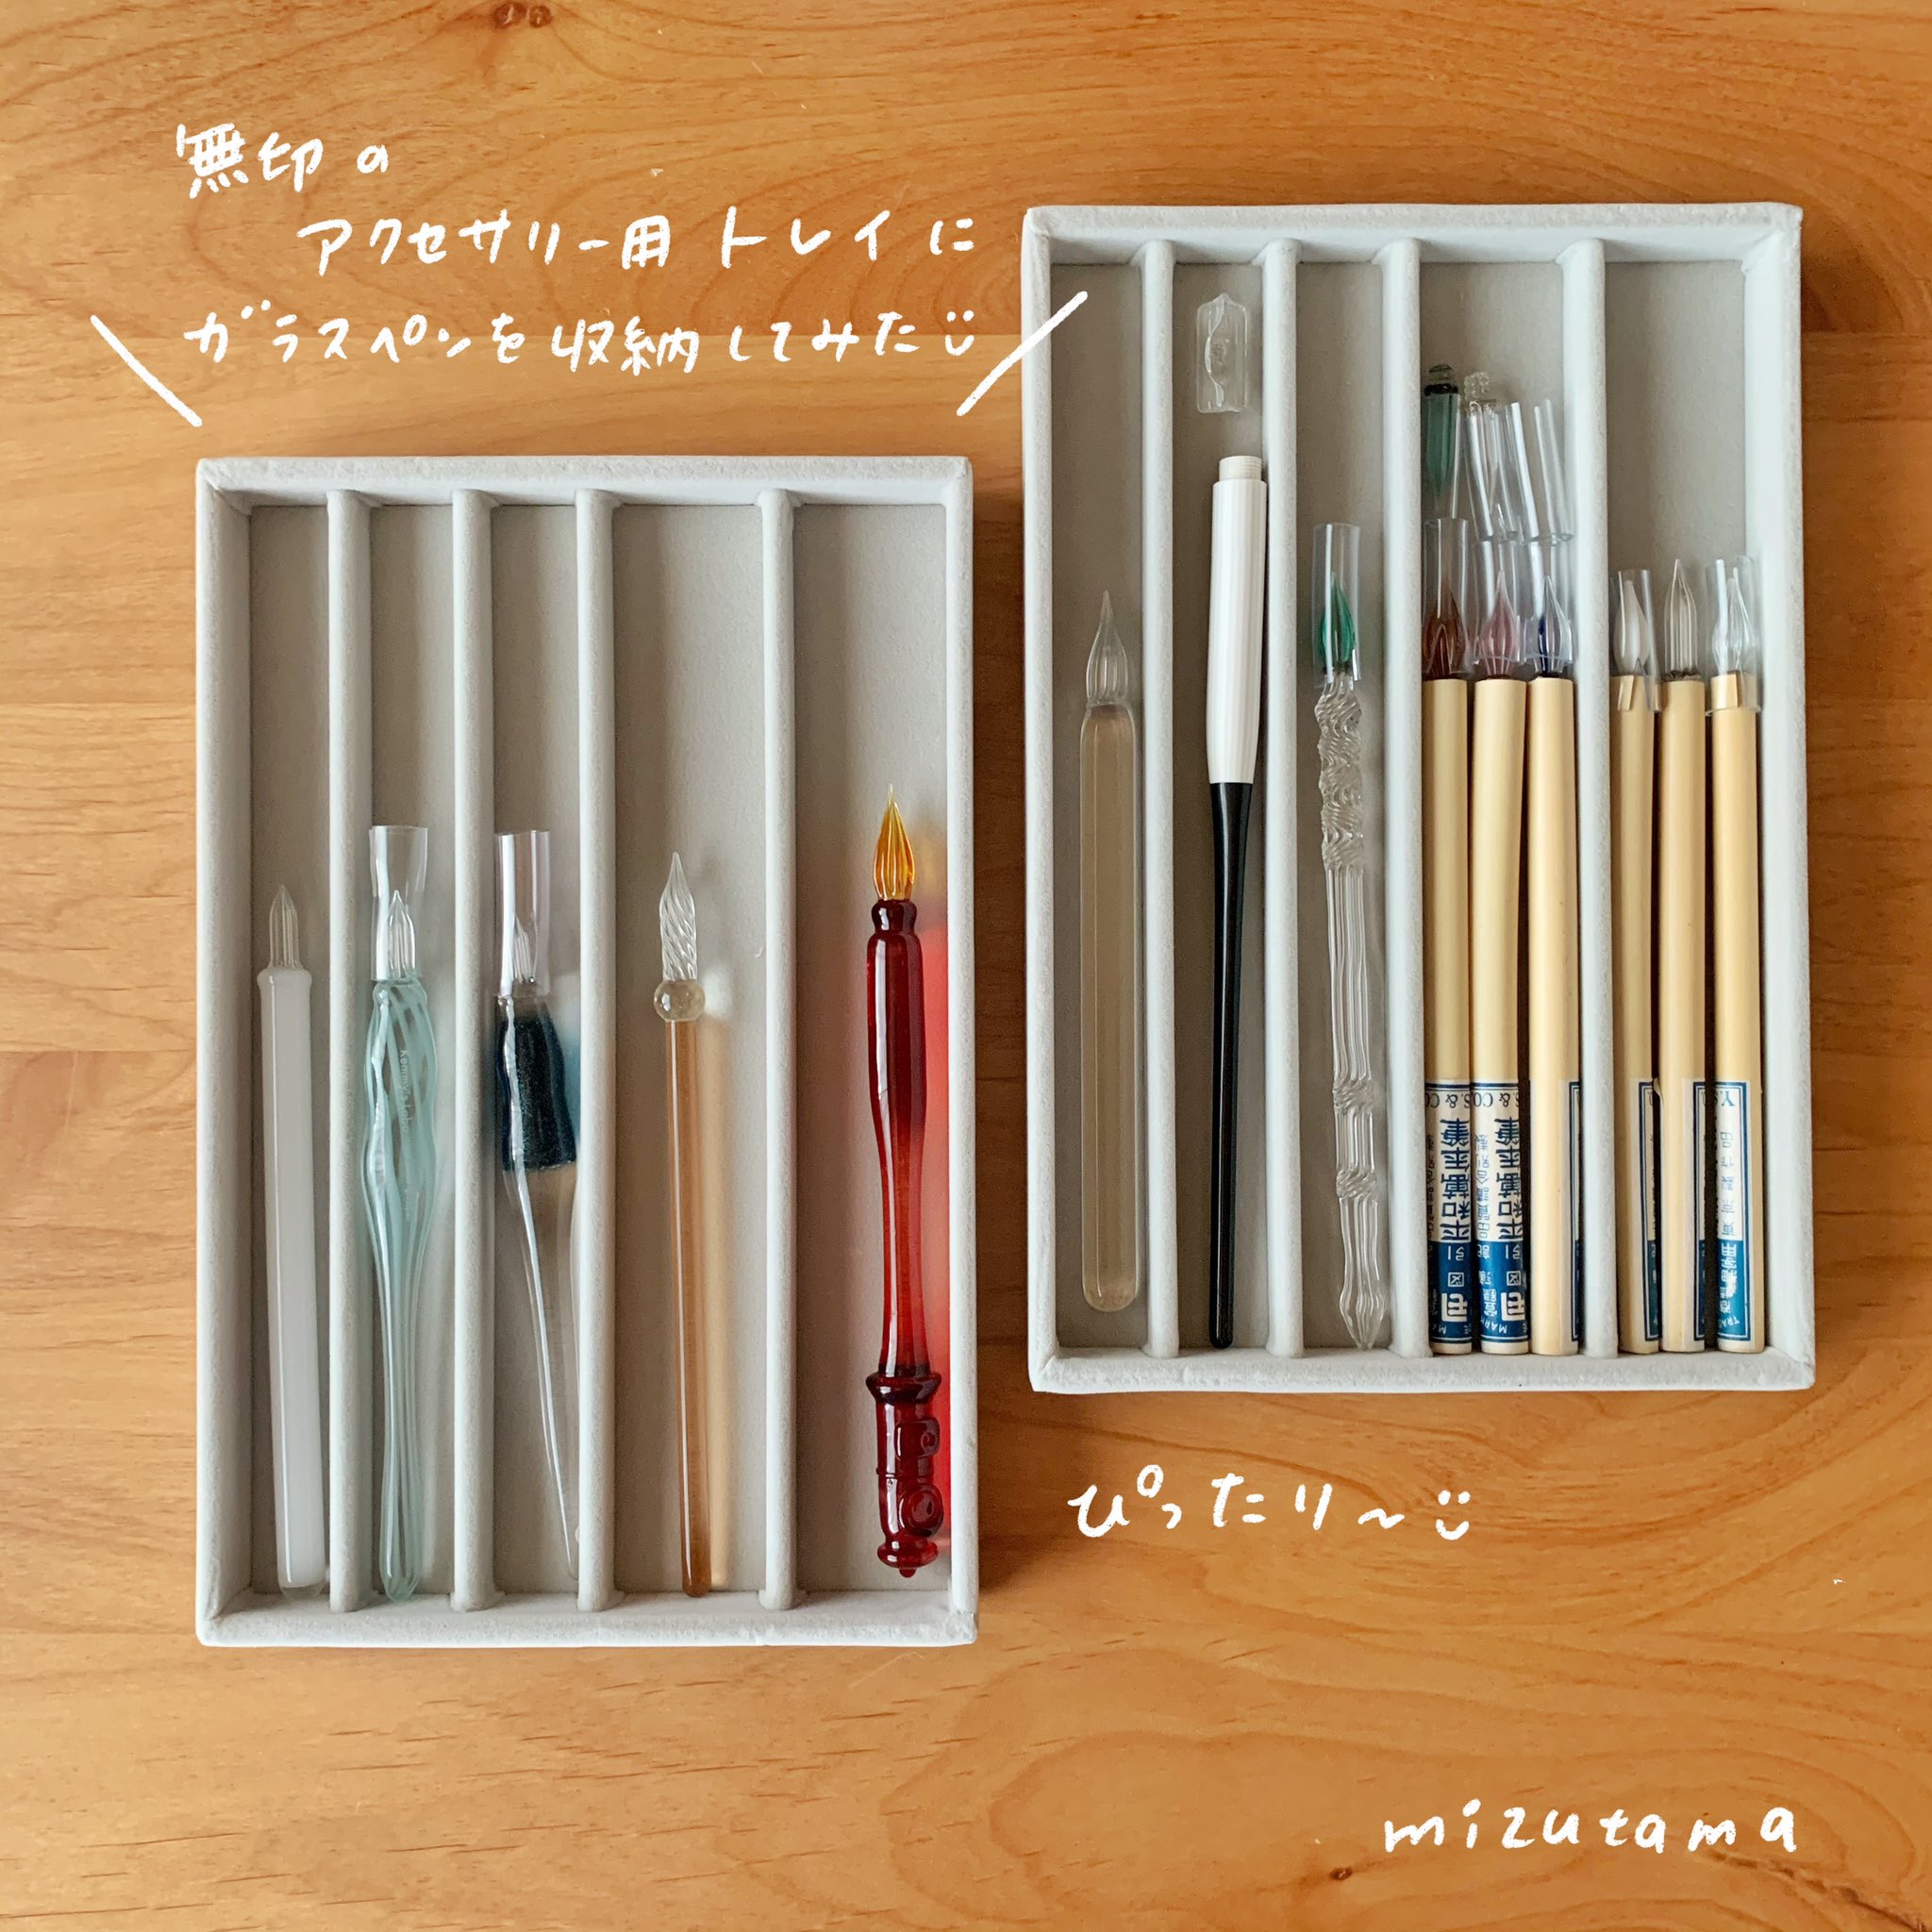 Mizutama En Twitter 無印のトレイにガラスペンを収納してみたよ このアクセサリー用のトレイ 仕切りあるし ベロアだし こりゃいい このまま引き出しにいれて収納しようと思います 収納がぴったりだとうれしい これで面倒がらず サクサク使えるように